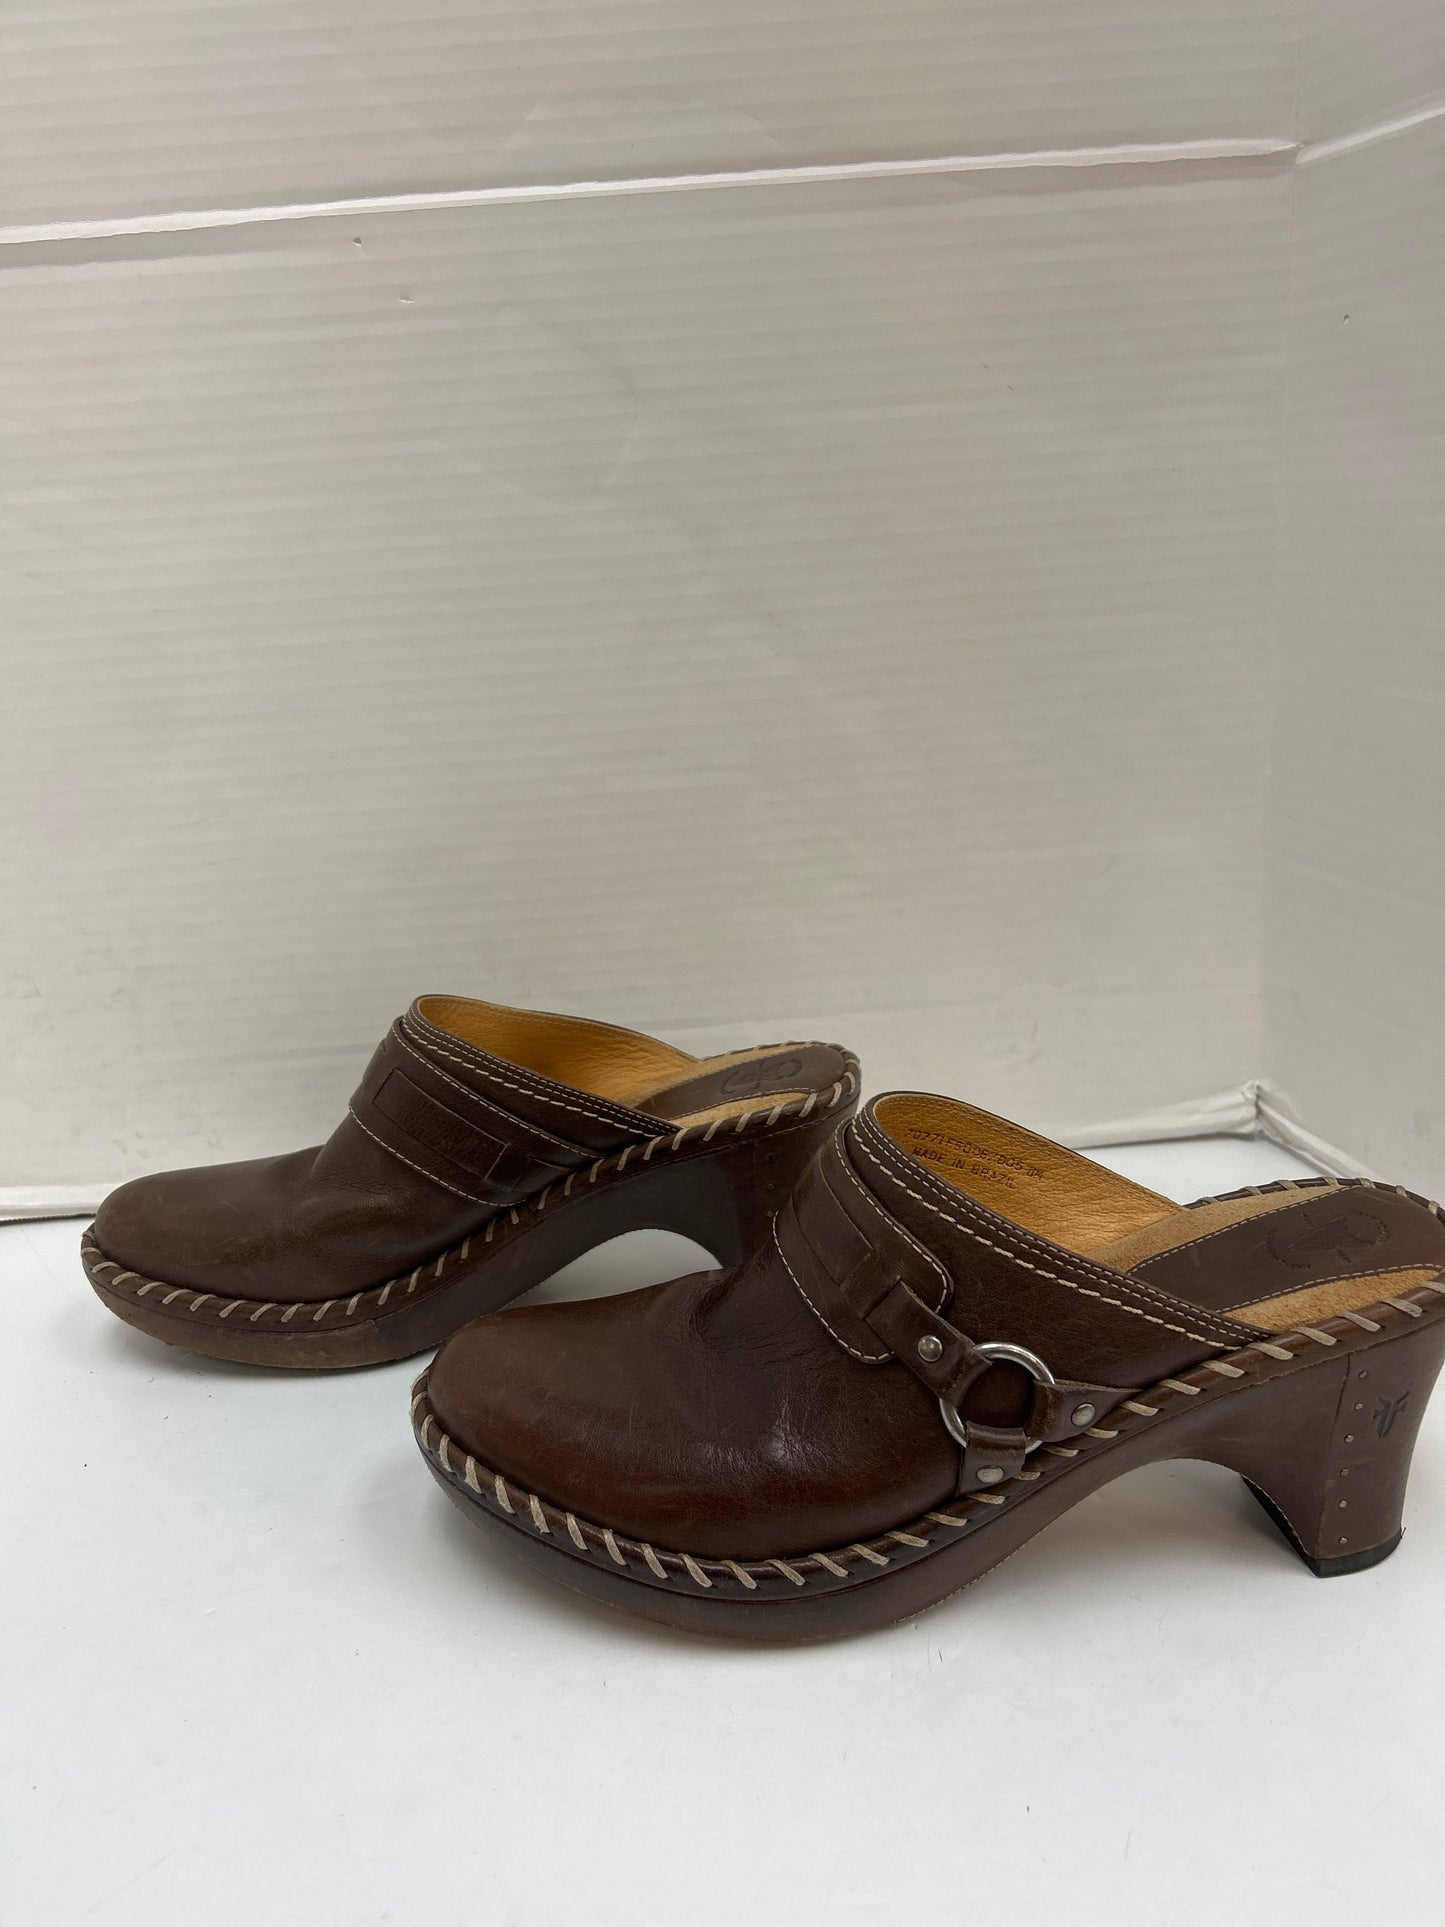 Shoes Flats Mule & Slide By Frye  Size: 11